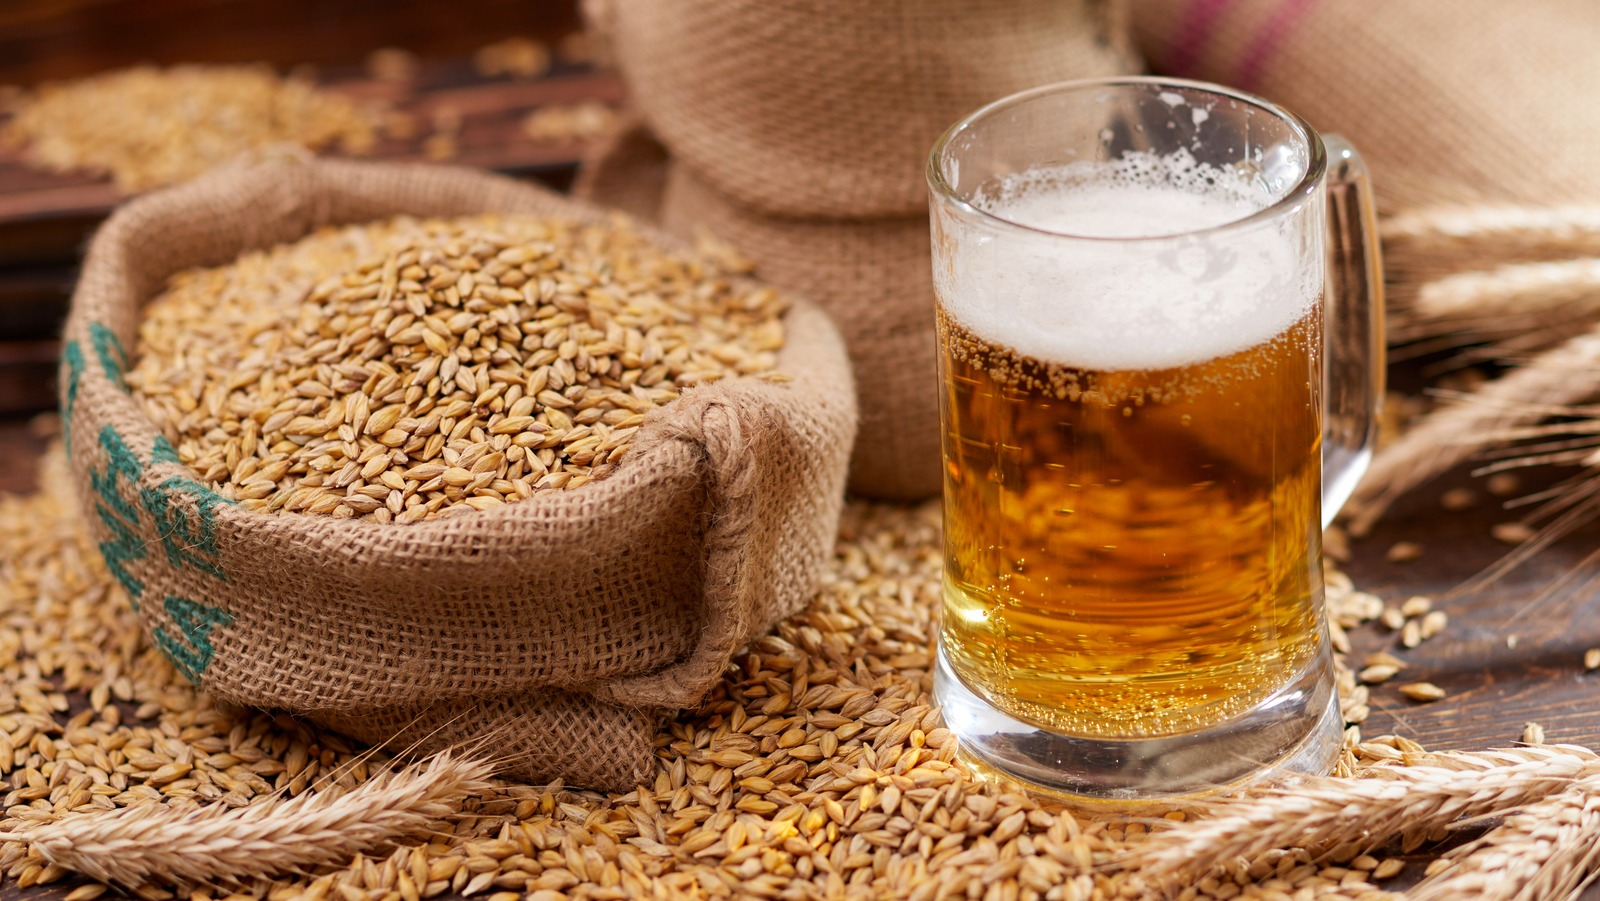 I ka mbijetuar mijëvjeçarëve, e kemi fjalën për recetën e lashtë të birrës me kore buke nga Mesopotamia!